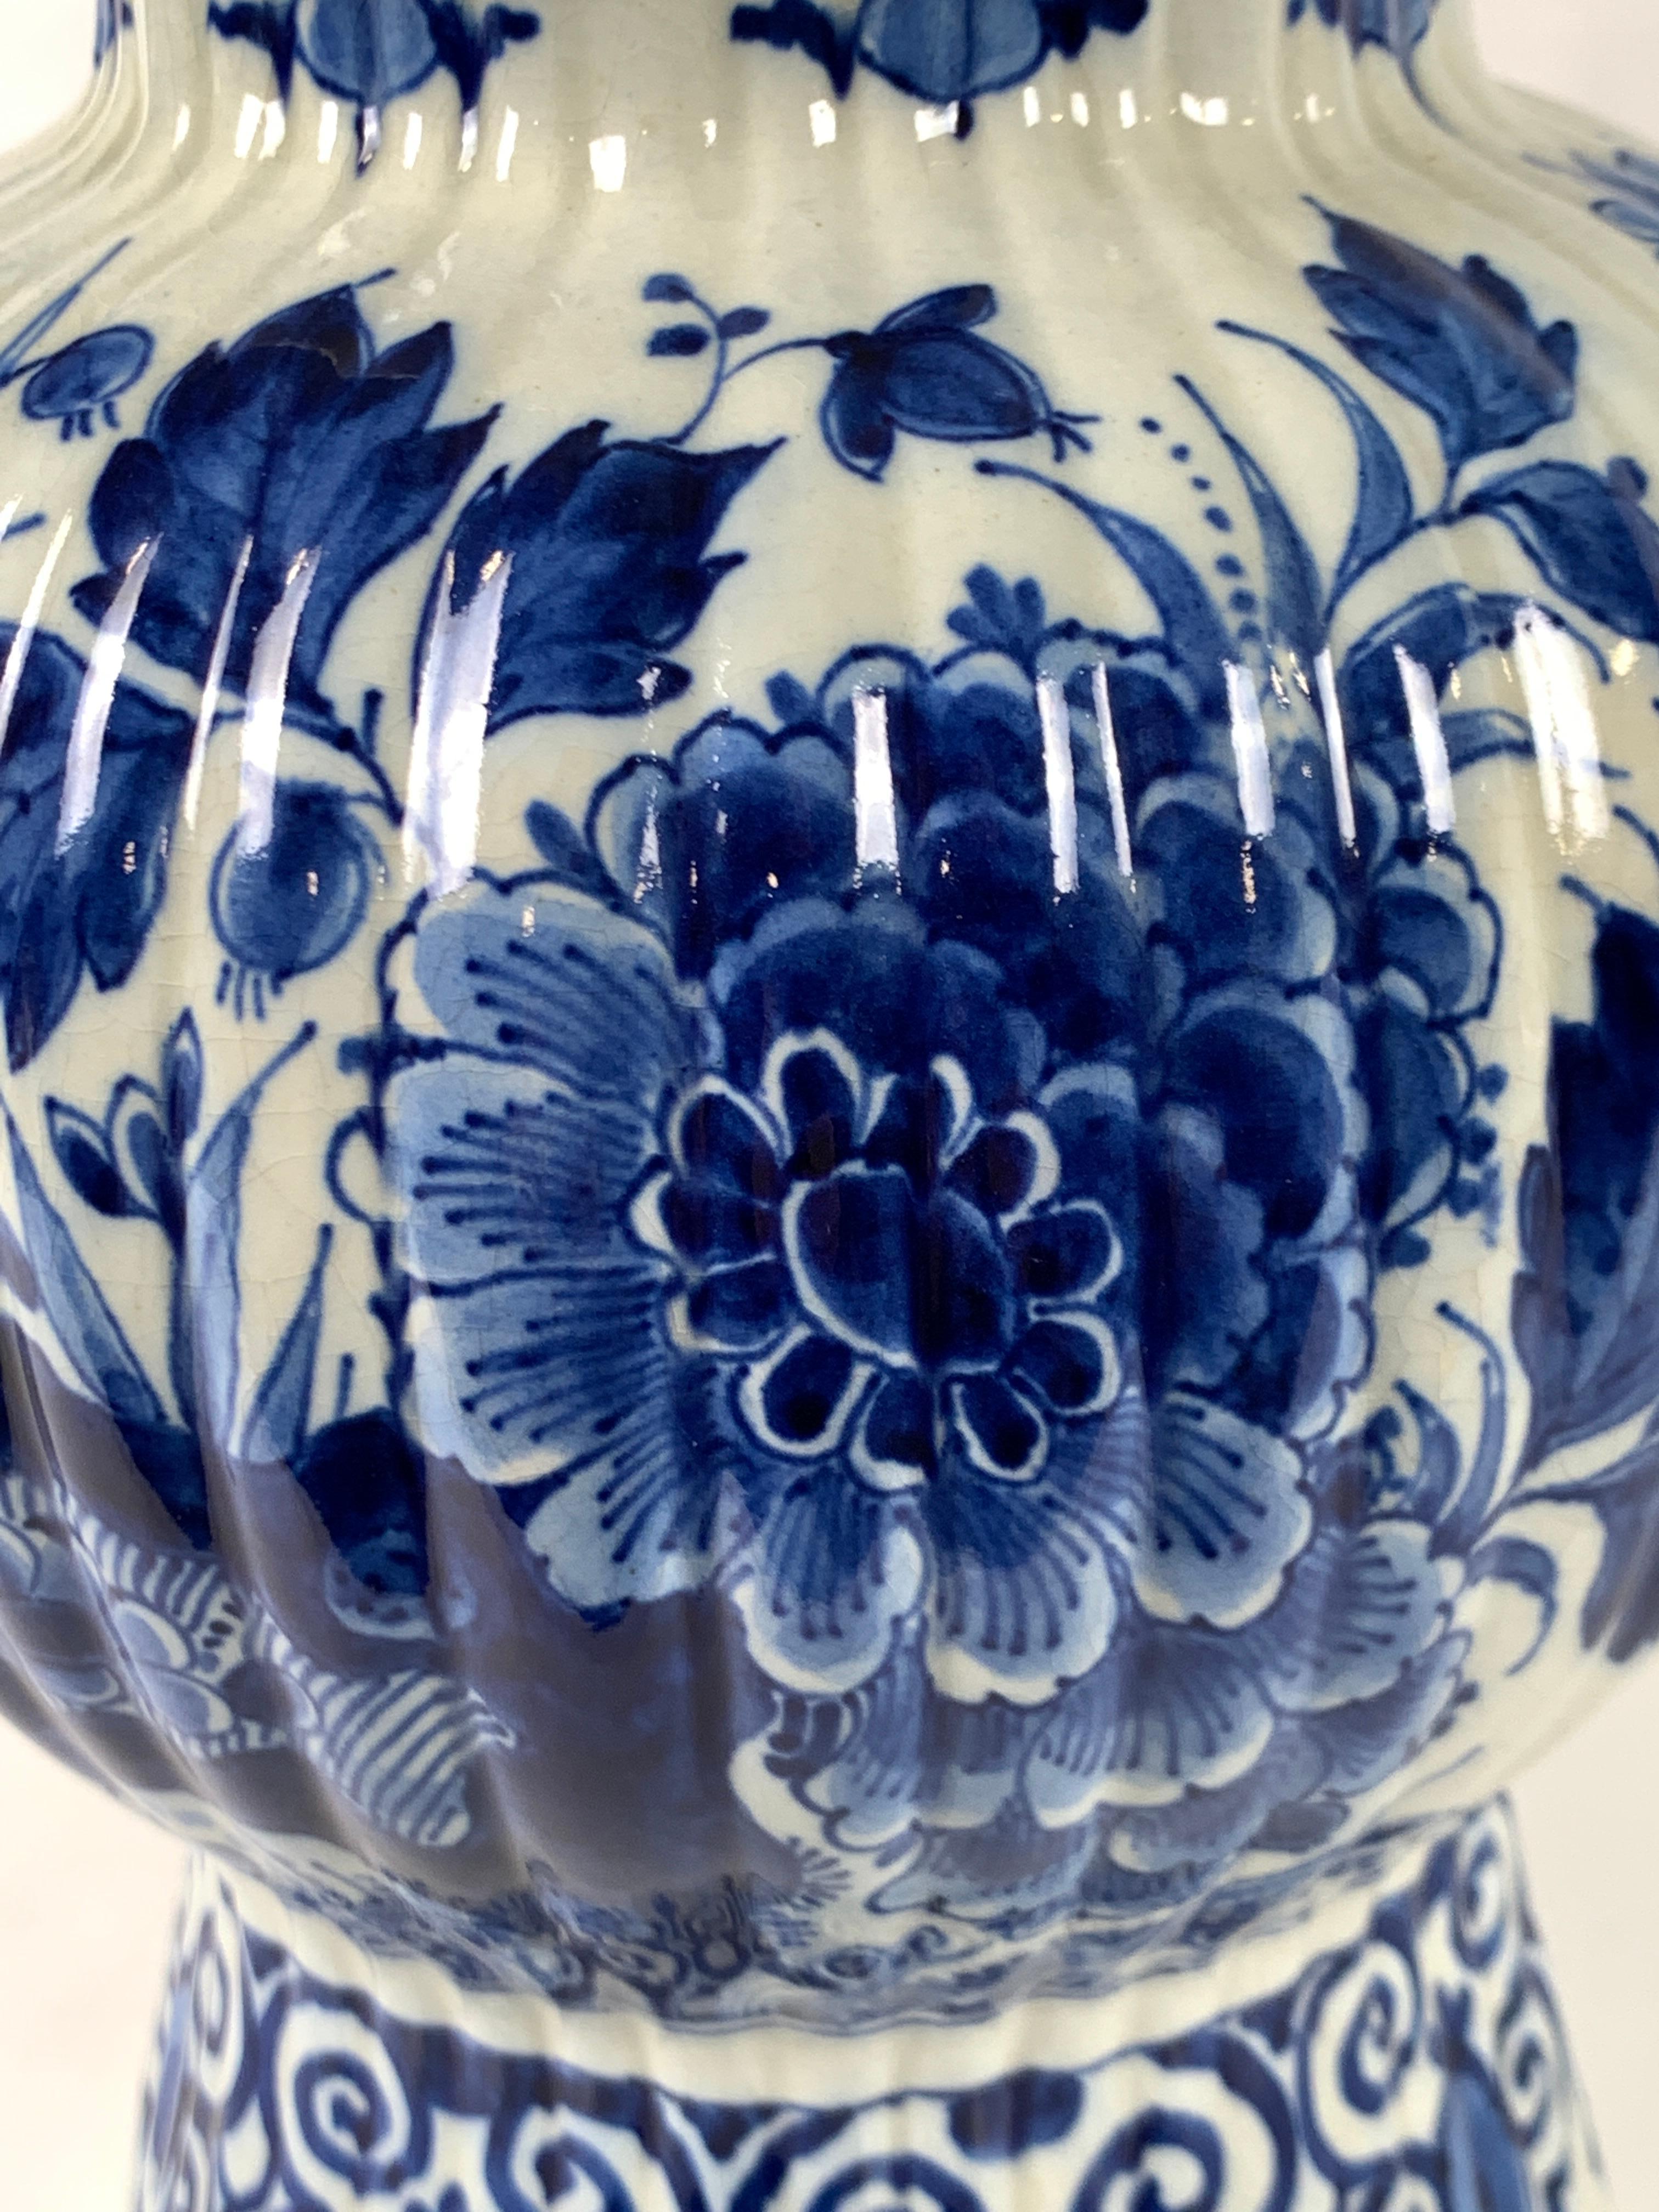 Cette jarre bleue et blanche est un joyau de Delft du milieu du XXe siècle peint à la main.
 Ce qui rend cette jarre si exceptionnelle, c'est la peinture exquise d'un bleu profond et riche.
Fabriquée par De Porceleyne Fles, cette jolie jarre est